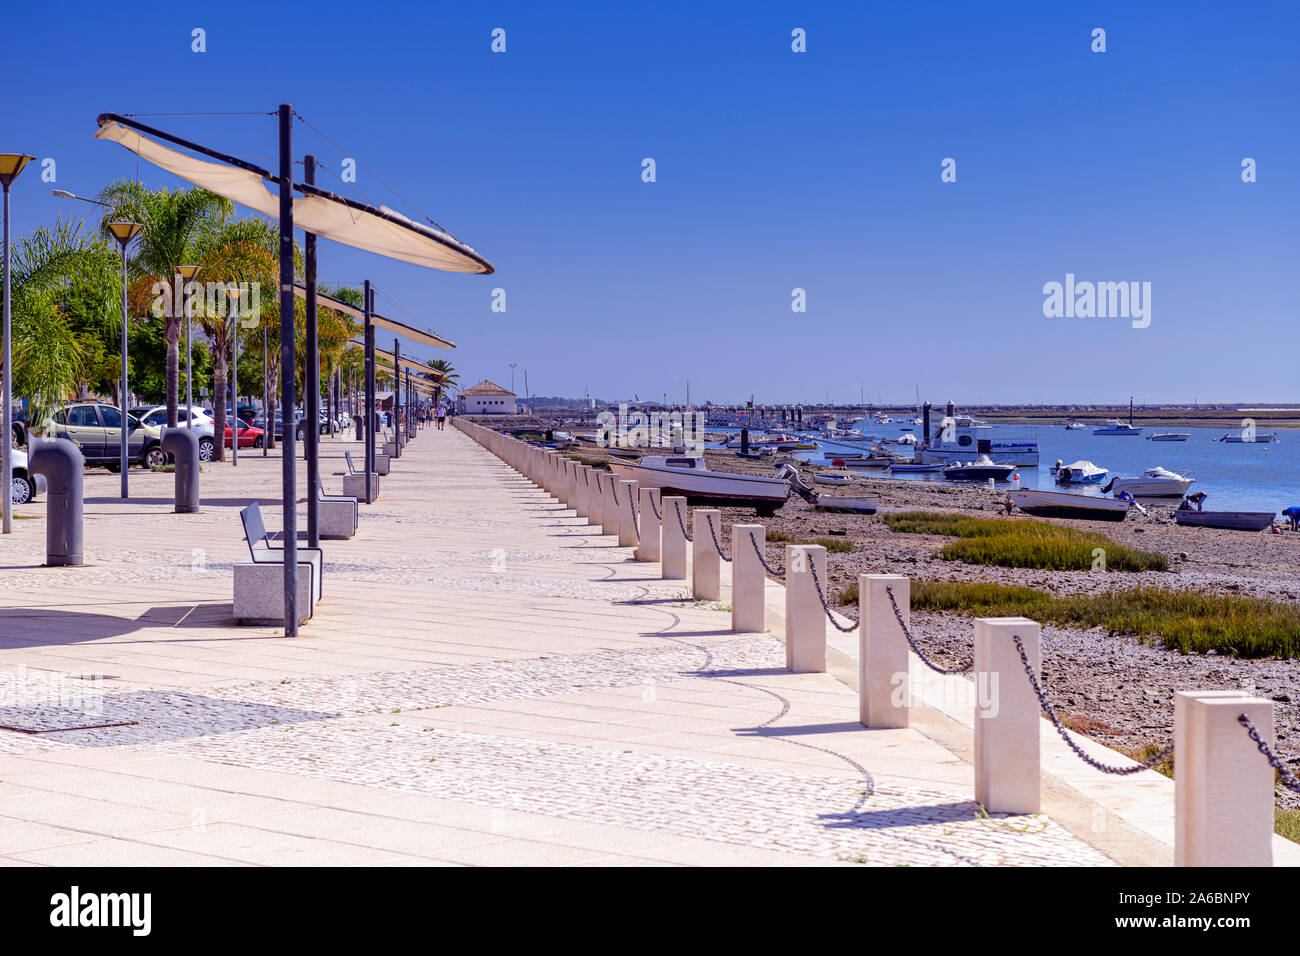 Passeggiata Santa Luzia accanto a Ria Formosa con panchine e ombrelloni. Il litorale ha la pesca e le barche da diporto Santa Luzia. Algarve, Portogallo. Foto Stock